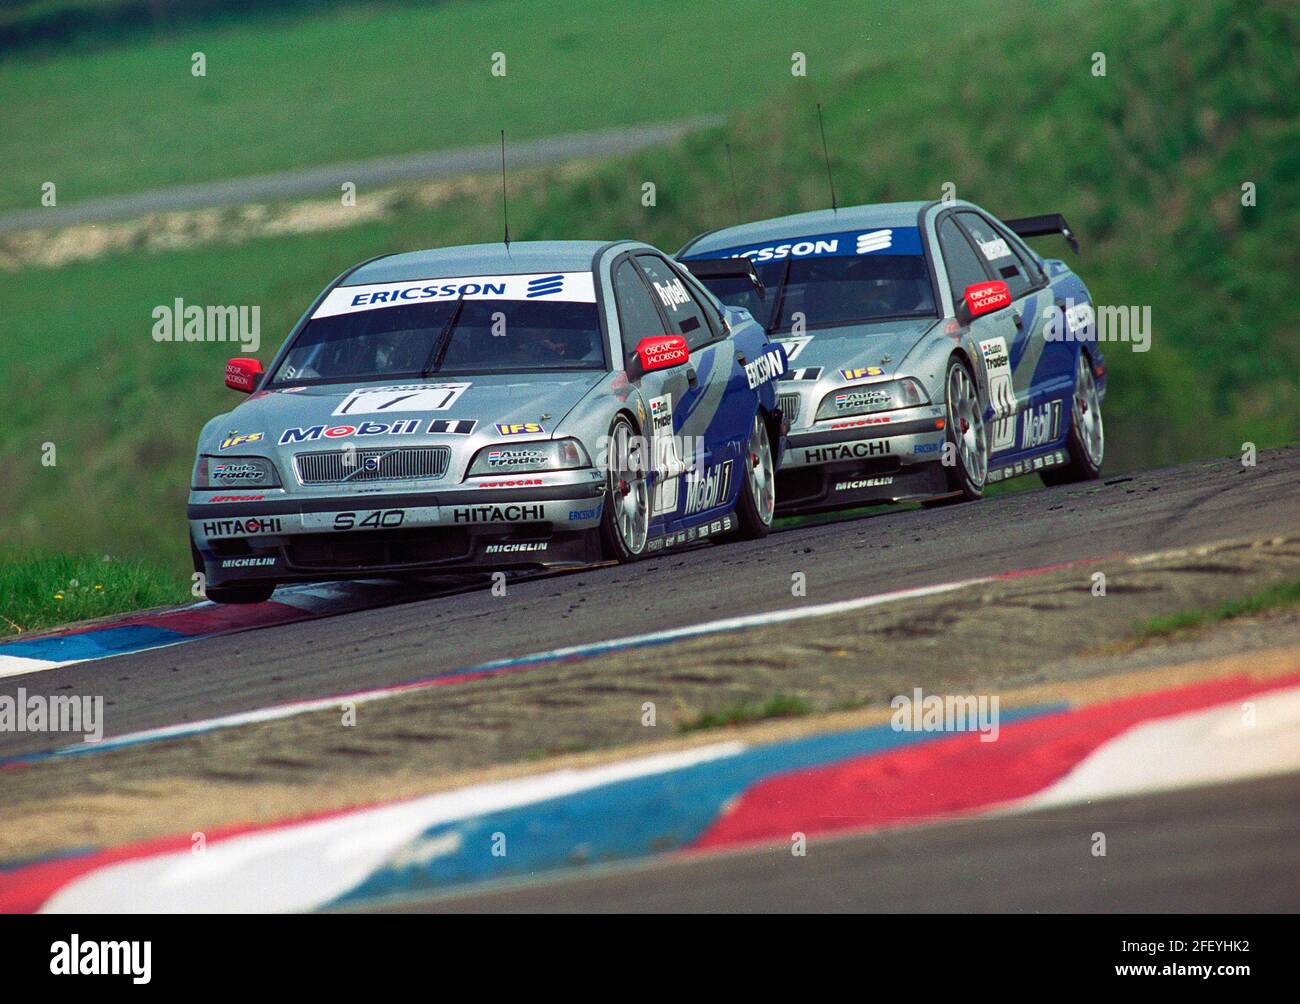 Rickard Rydell führt Vincent Radermecker an, als sie 1999 bei der British Touring Car Championship auf dem Thruxton Racing Circuit in den Club Complex gehen. Stockfoto